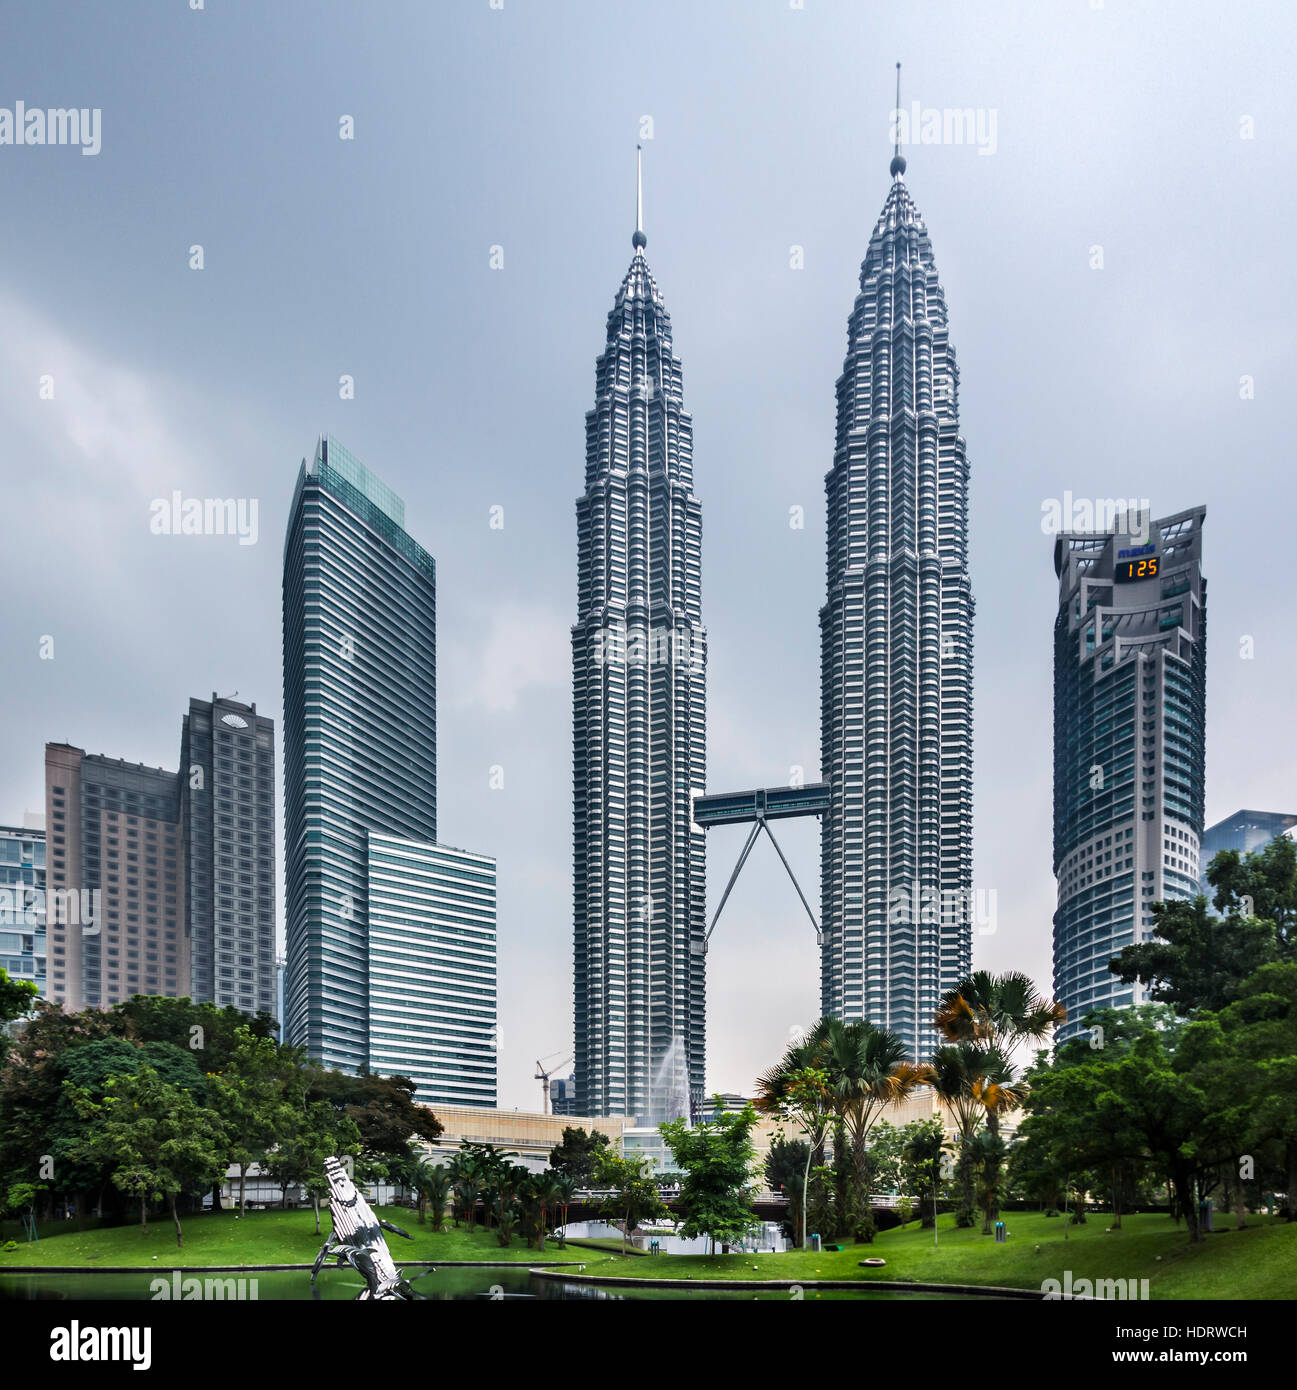 Skycraper in Kuala Lumpur, Malaysia Stock Photo